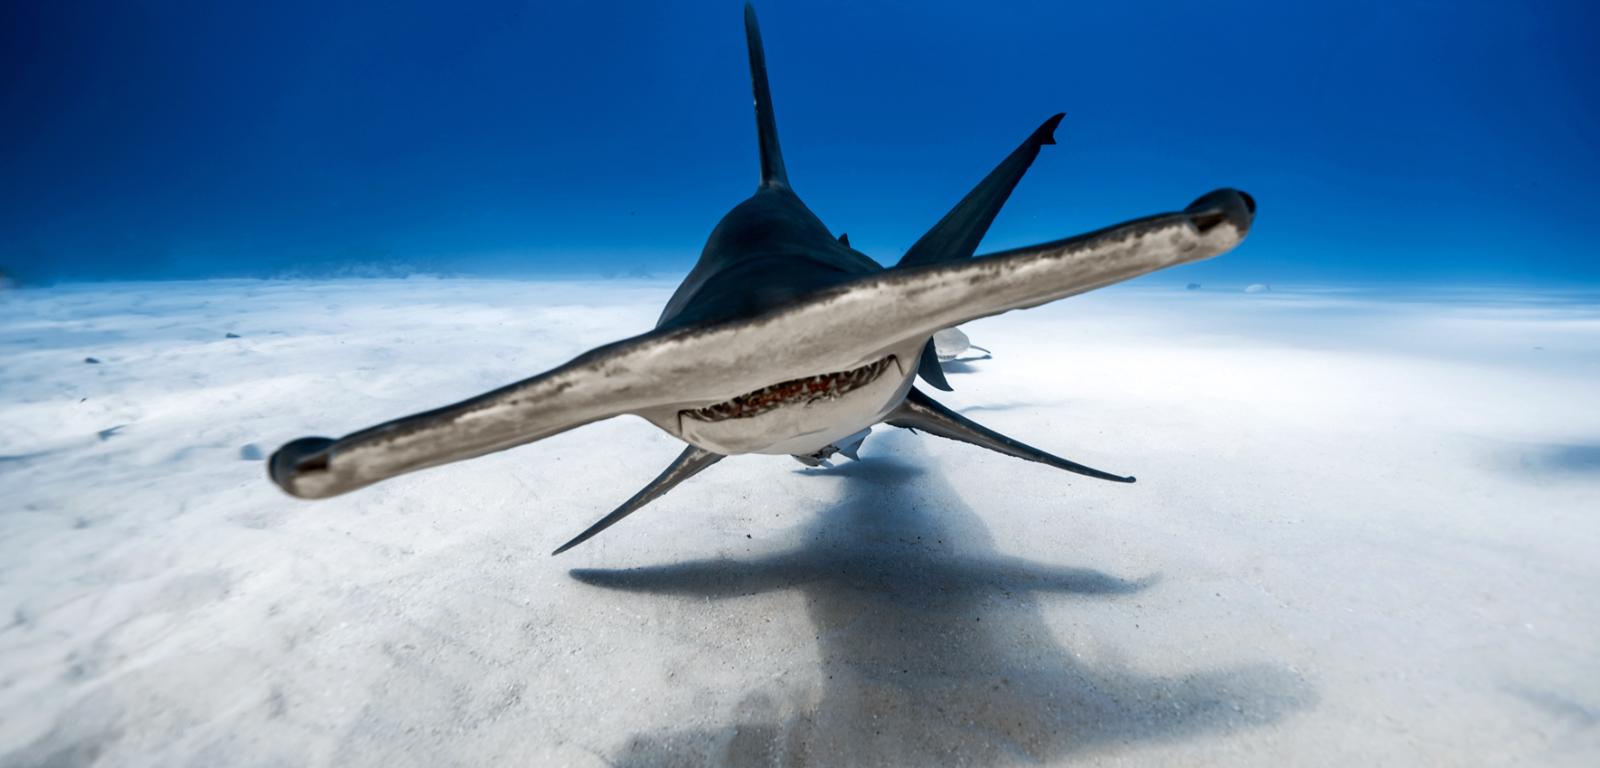 Głowomłot olbrzymi – jeden z rekinów, którym przypisywane są ataki na człowieka.